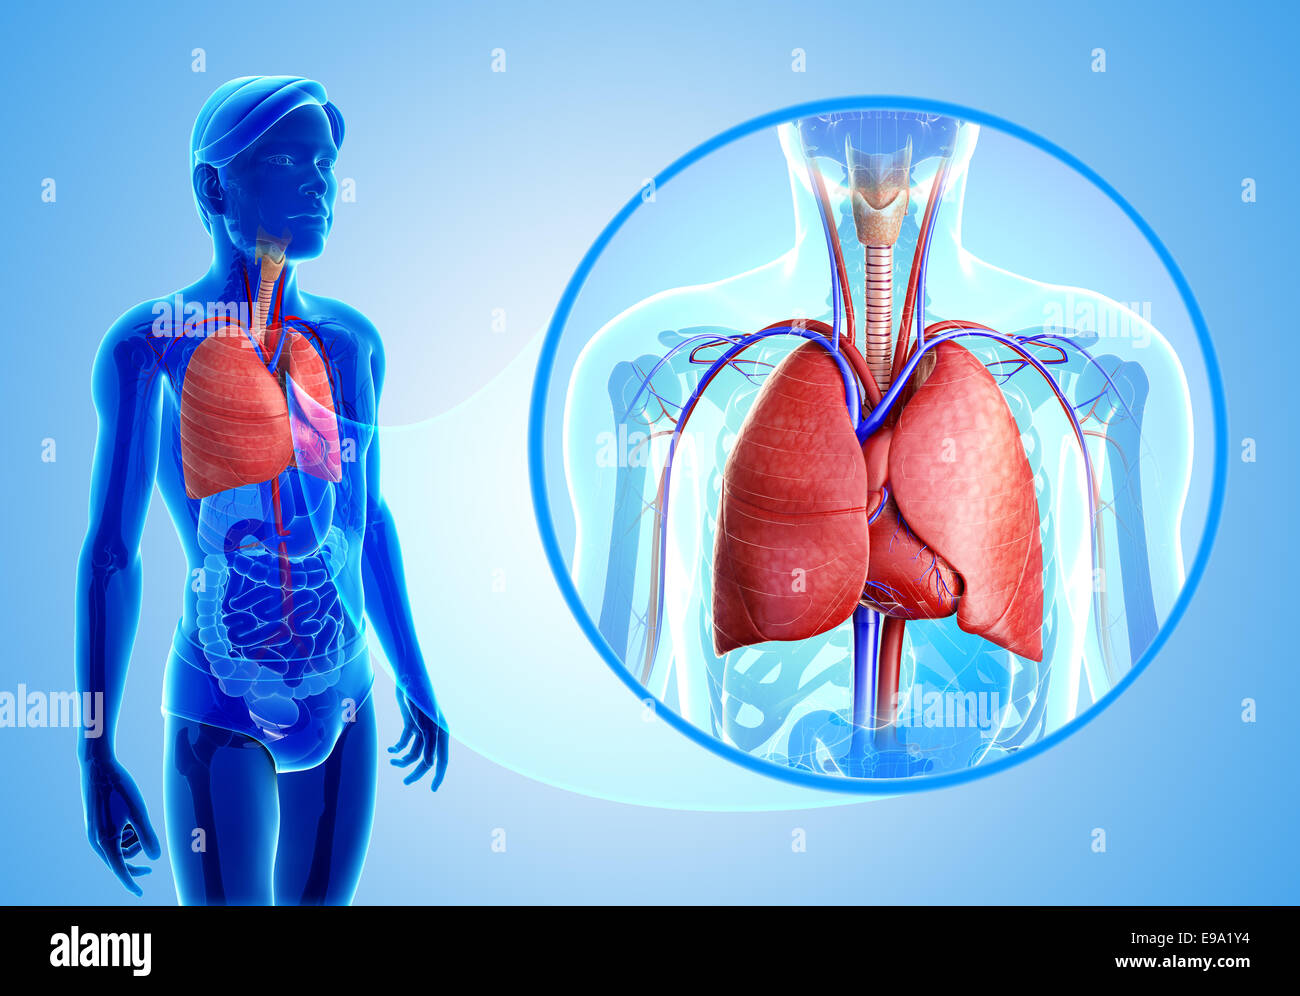 Abbildung der menschlichen Lunge Anatomie Stockfotografie - Alamy